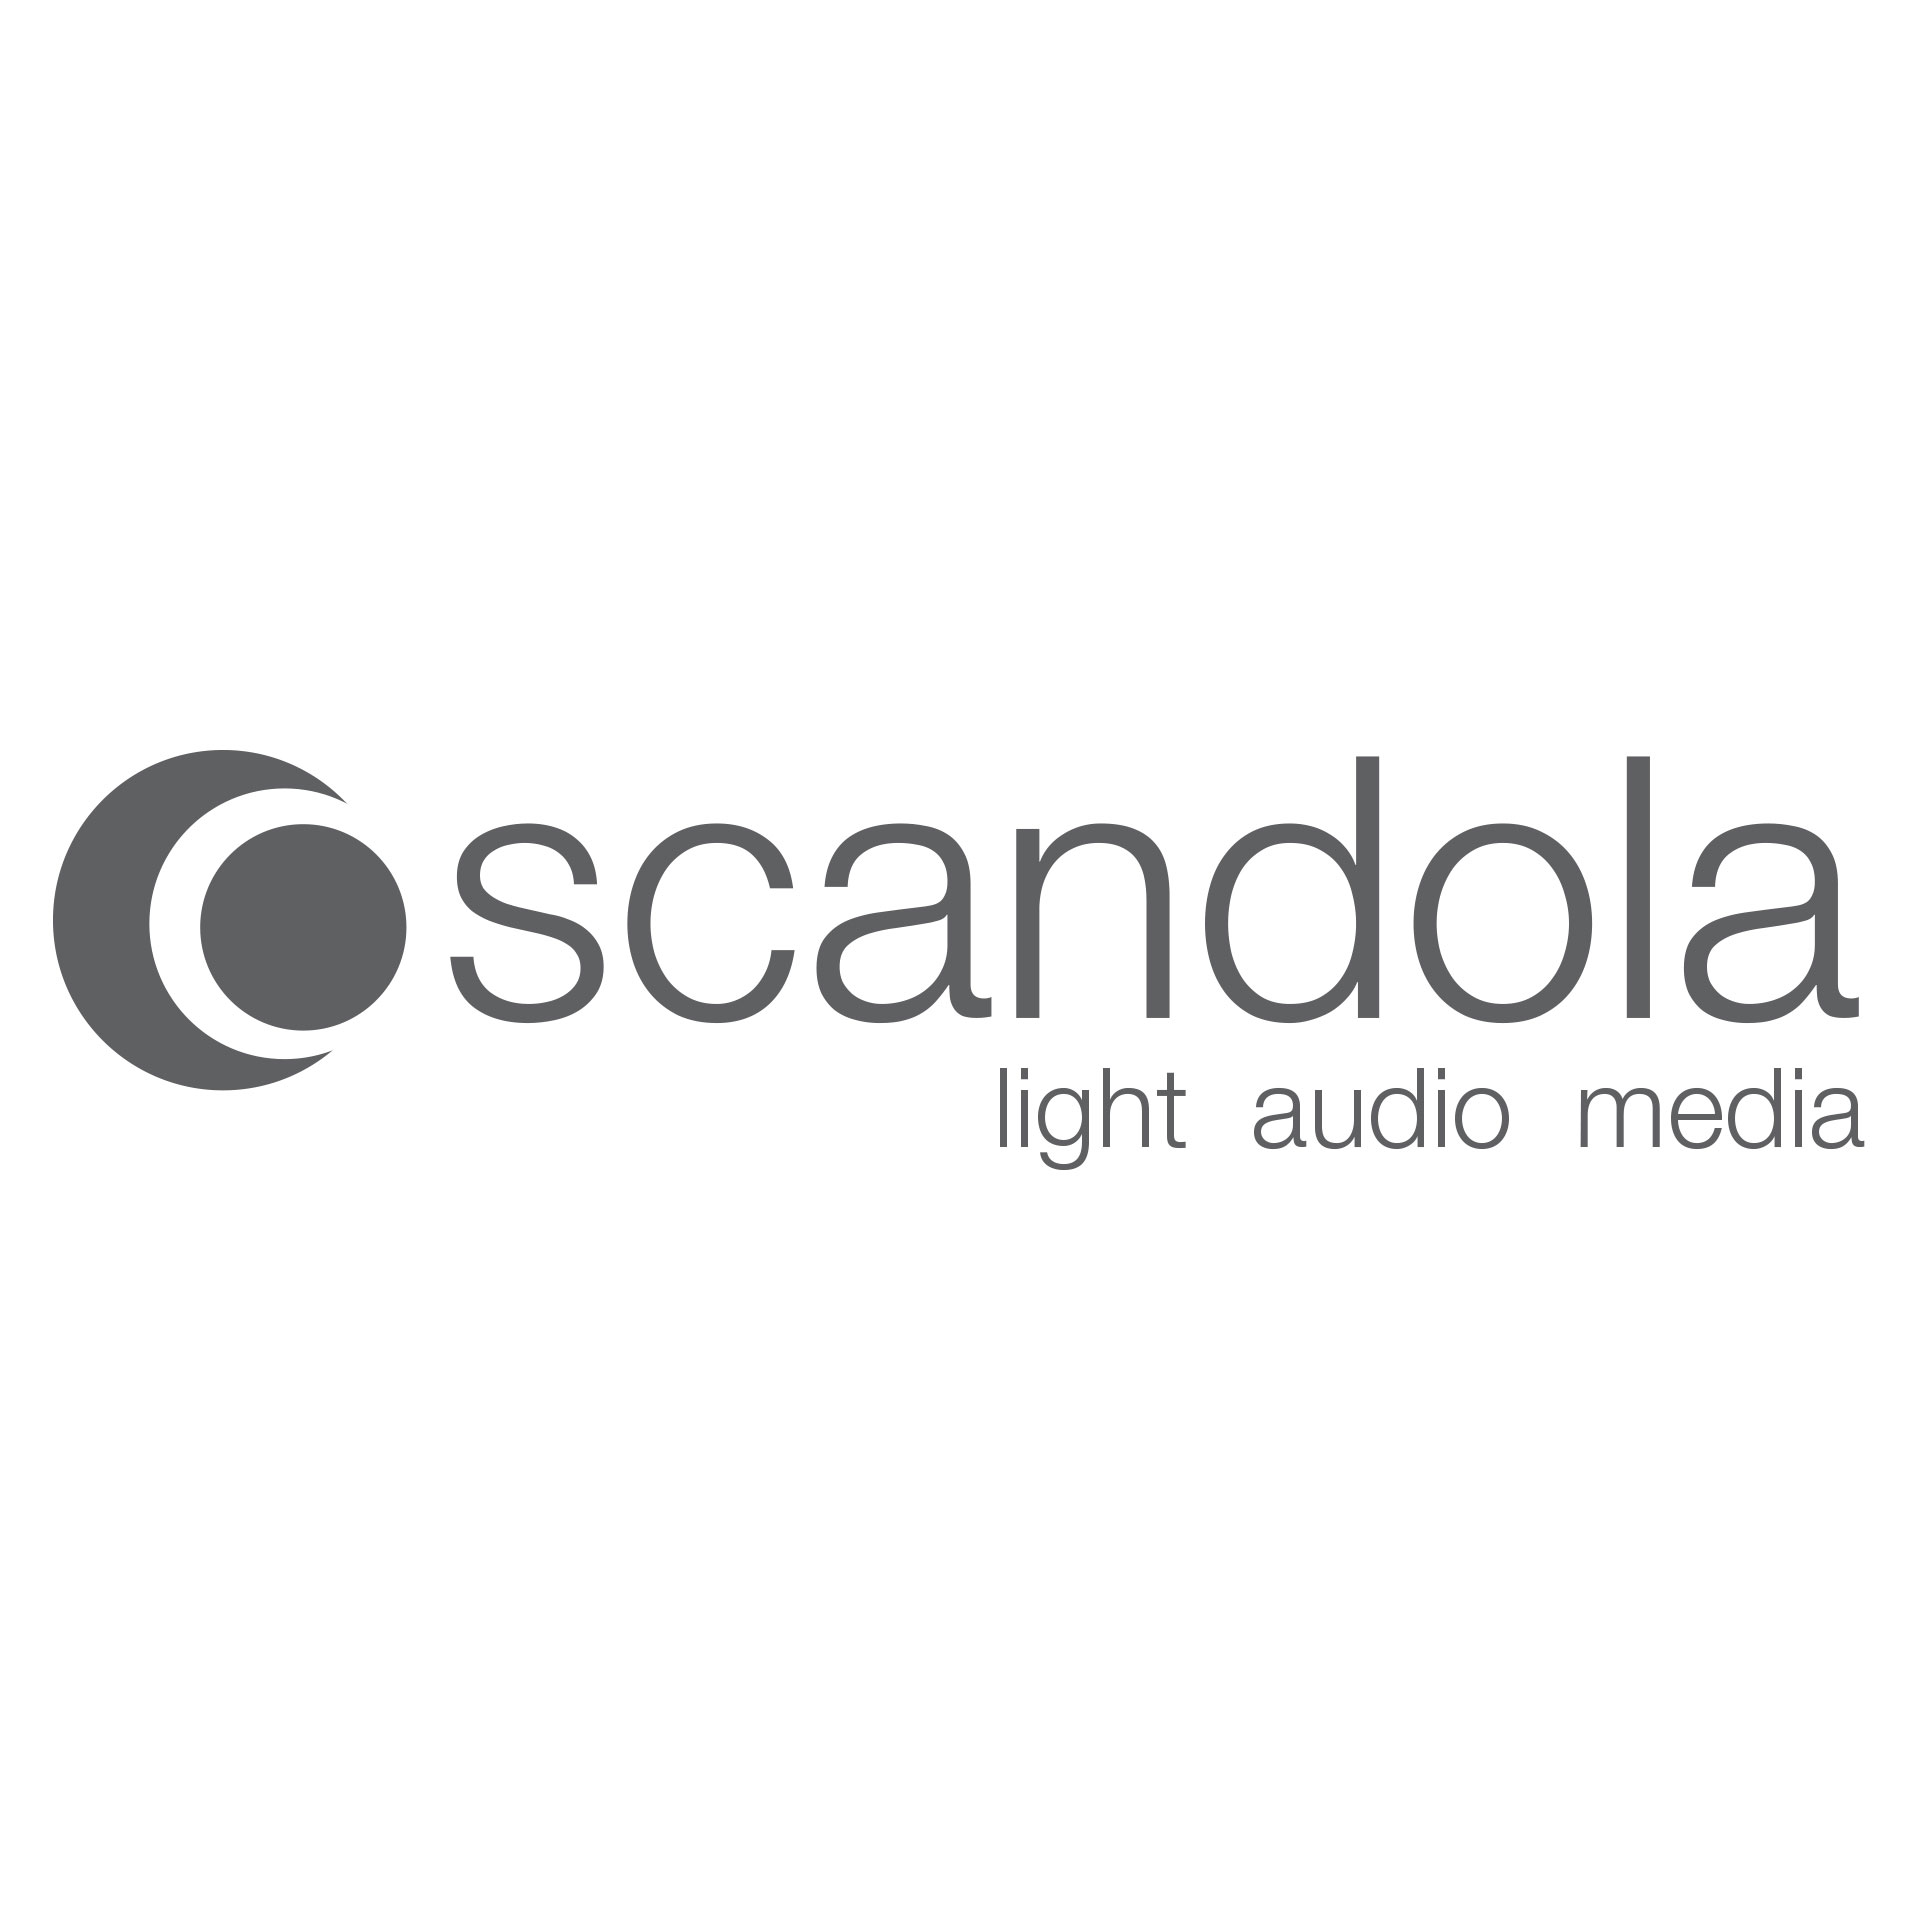 Scandola_Logo.jpg